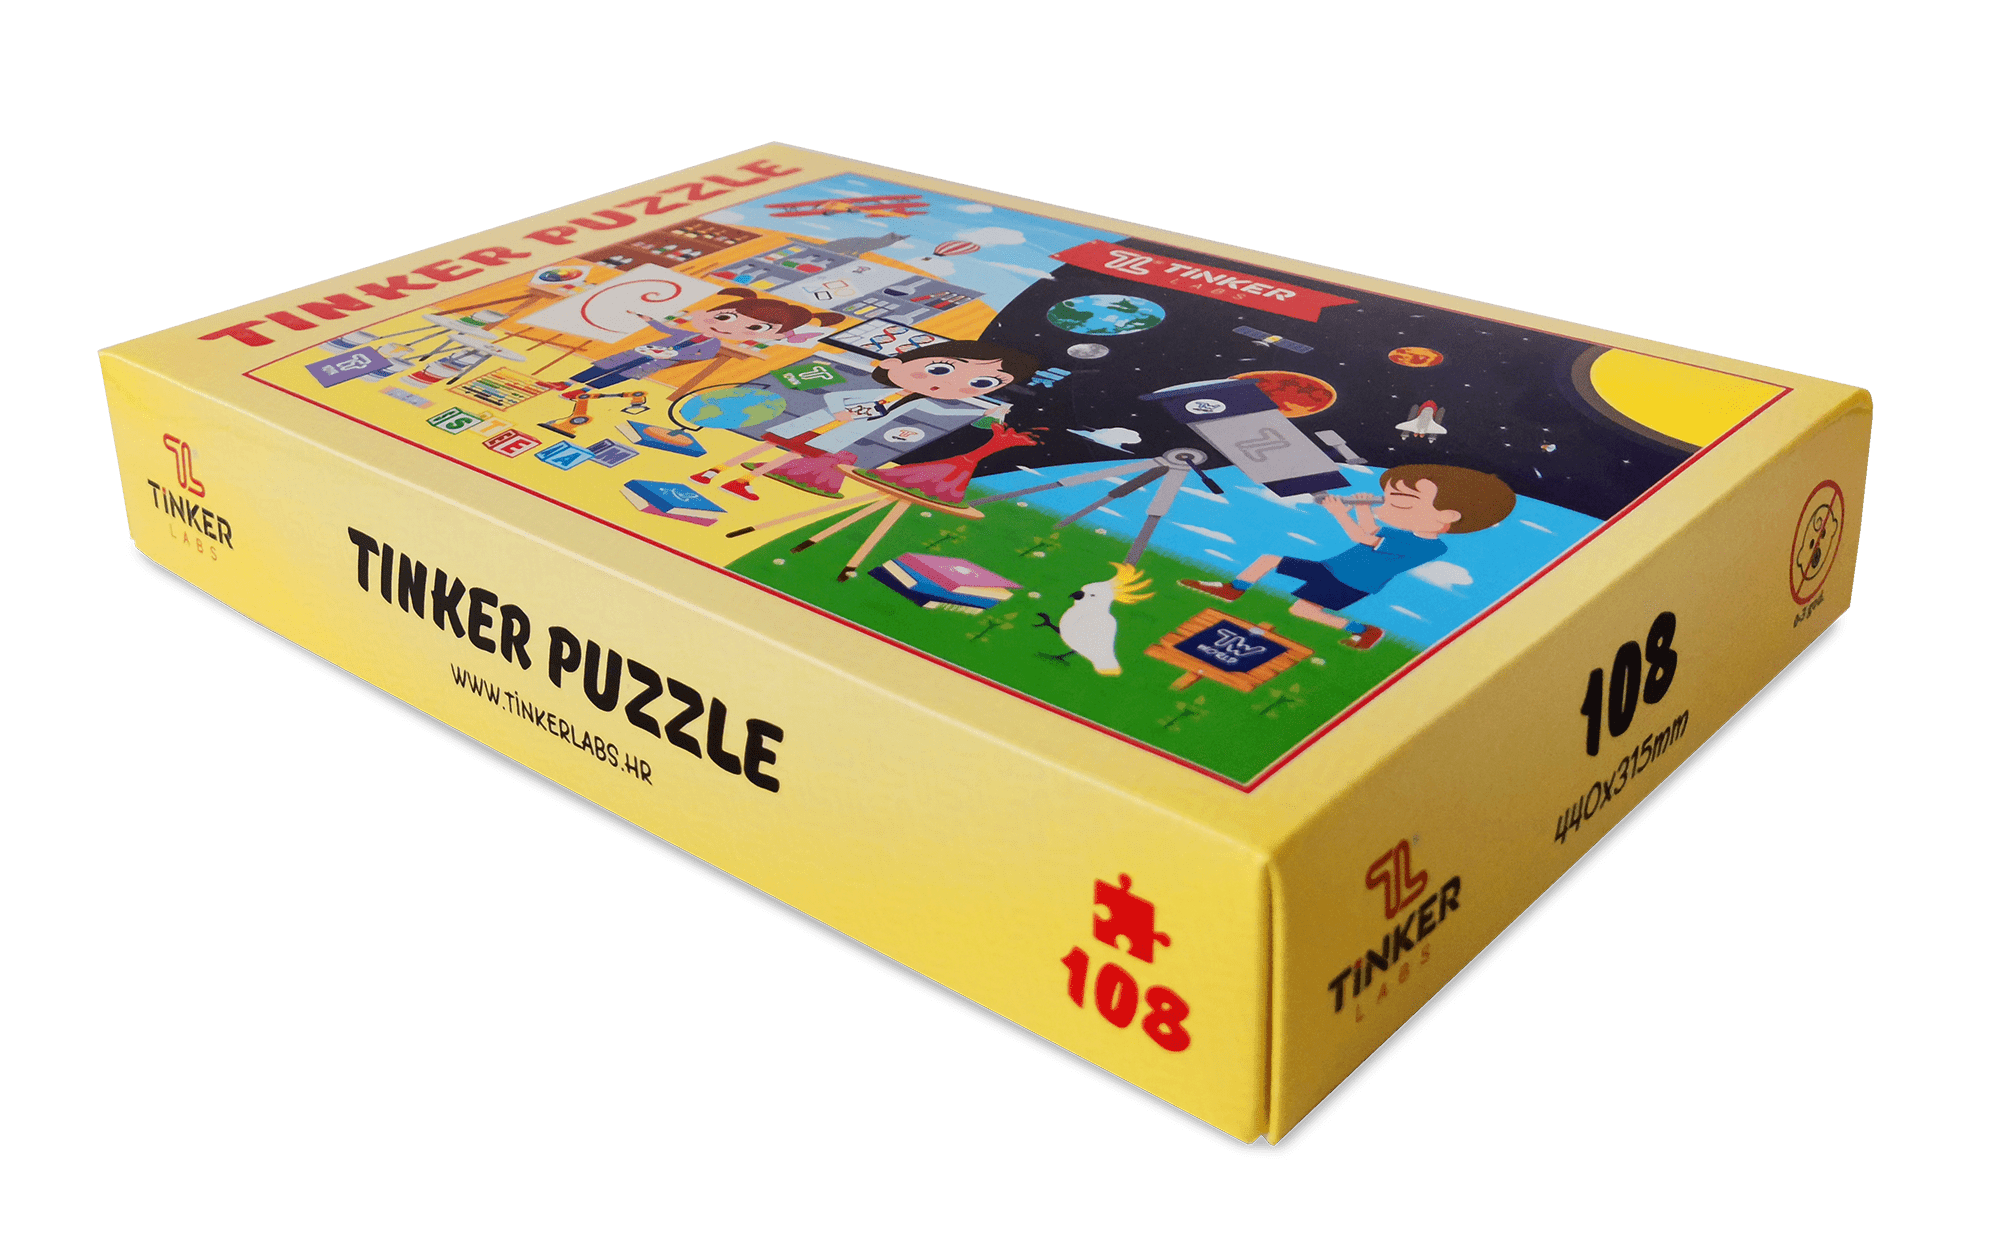 Kutija Tinker Puzzle za slaganje koja se sastoji od 108 komada.